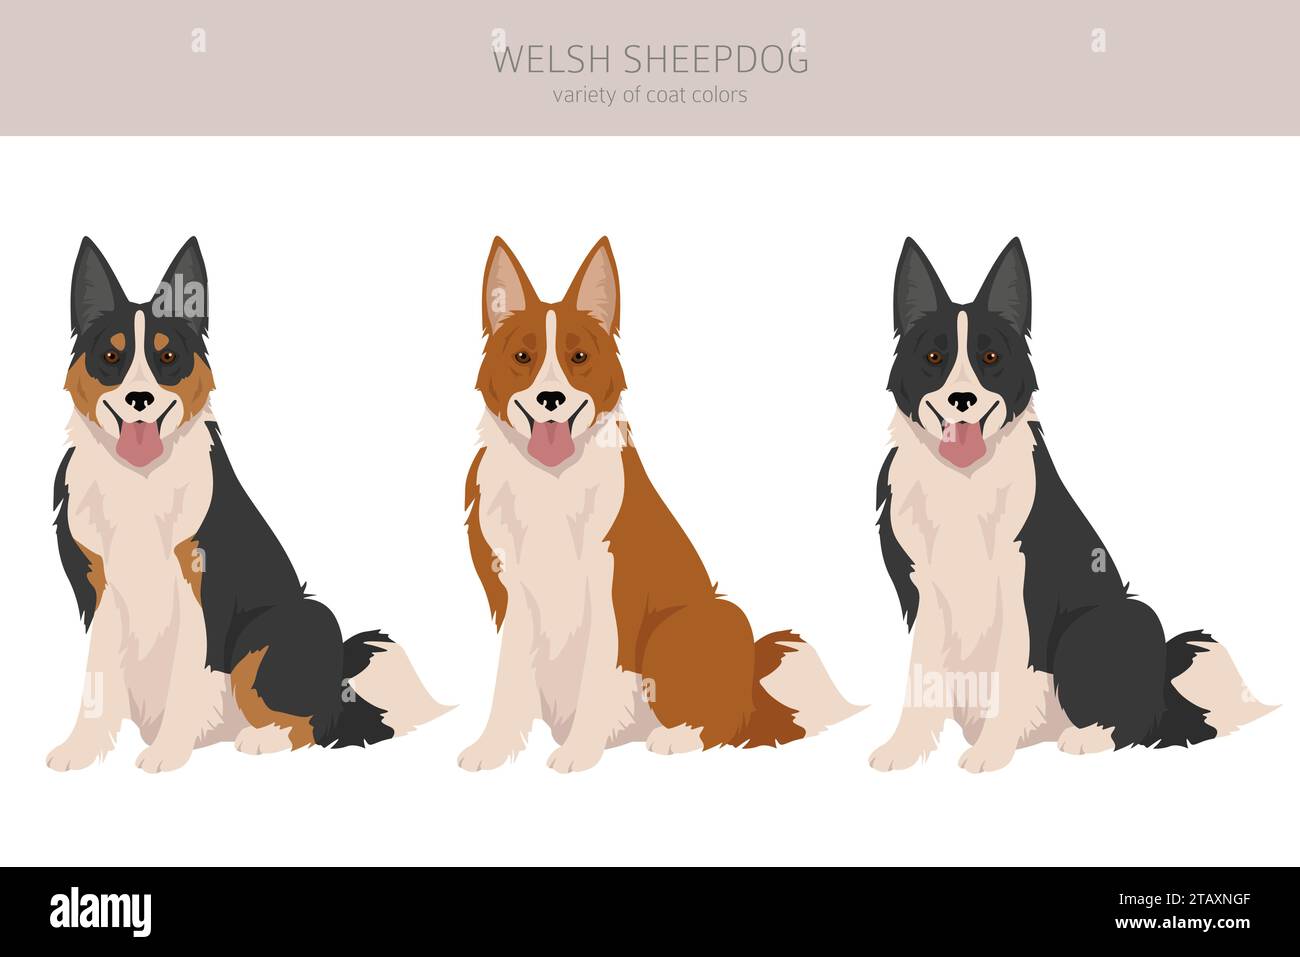 Welsh Sheepdog Clipart. Alle Fellfarben eingestellt. Alle Hunderassen Merkmale Infografik. Vektorgrafik Stock Vektor